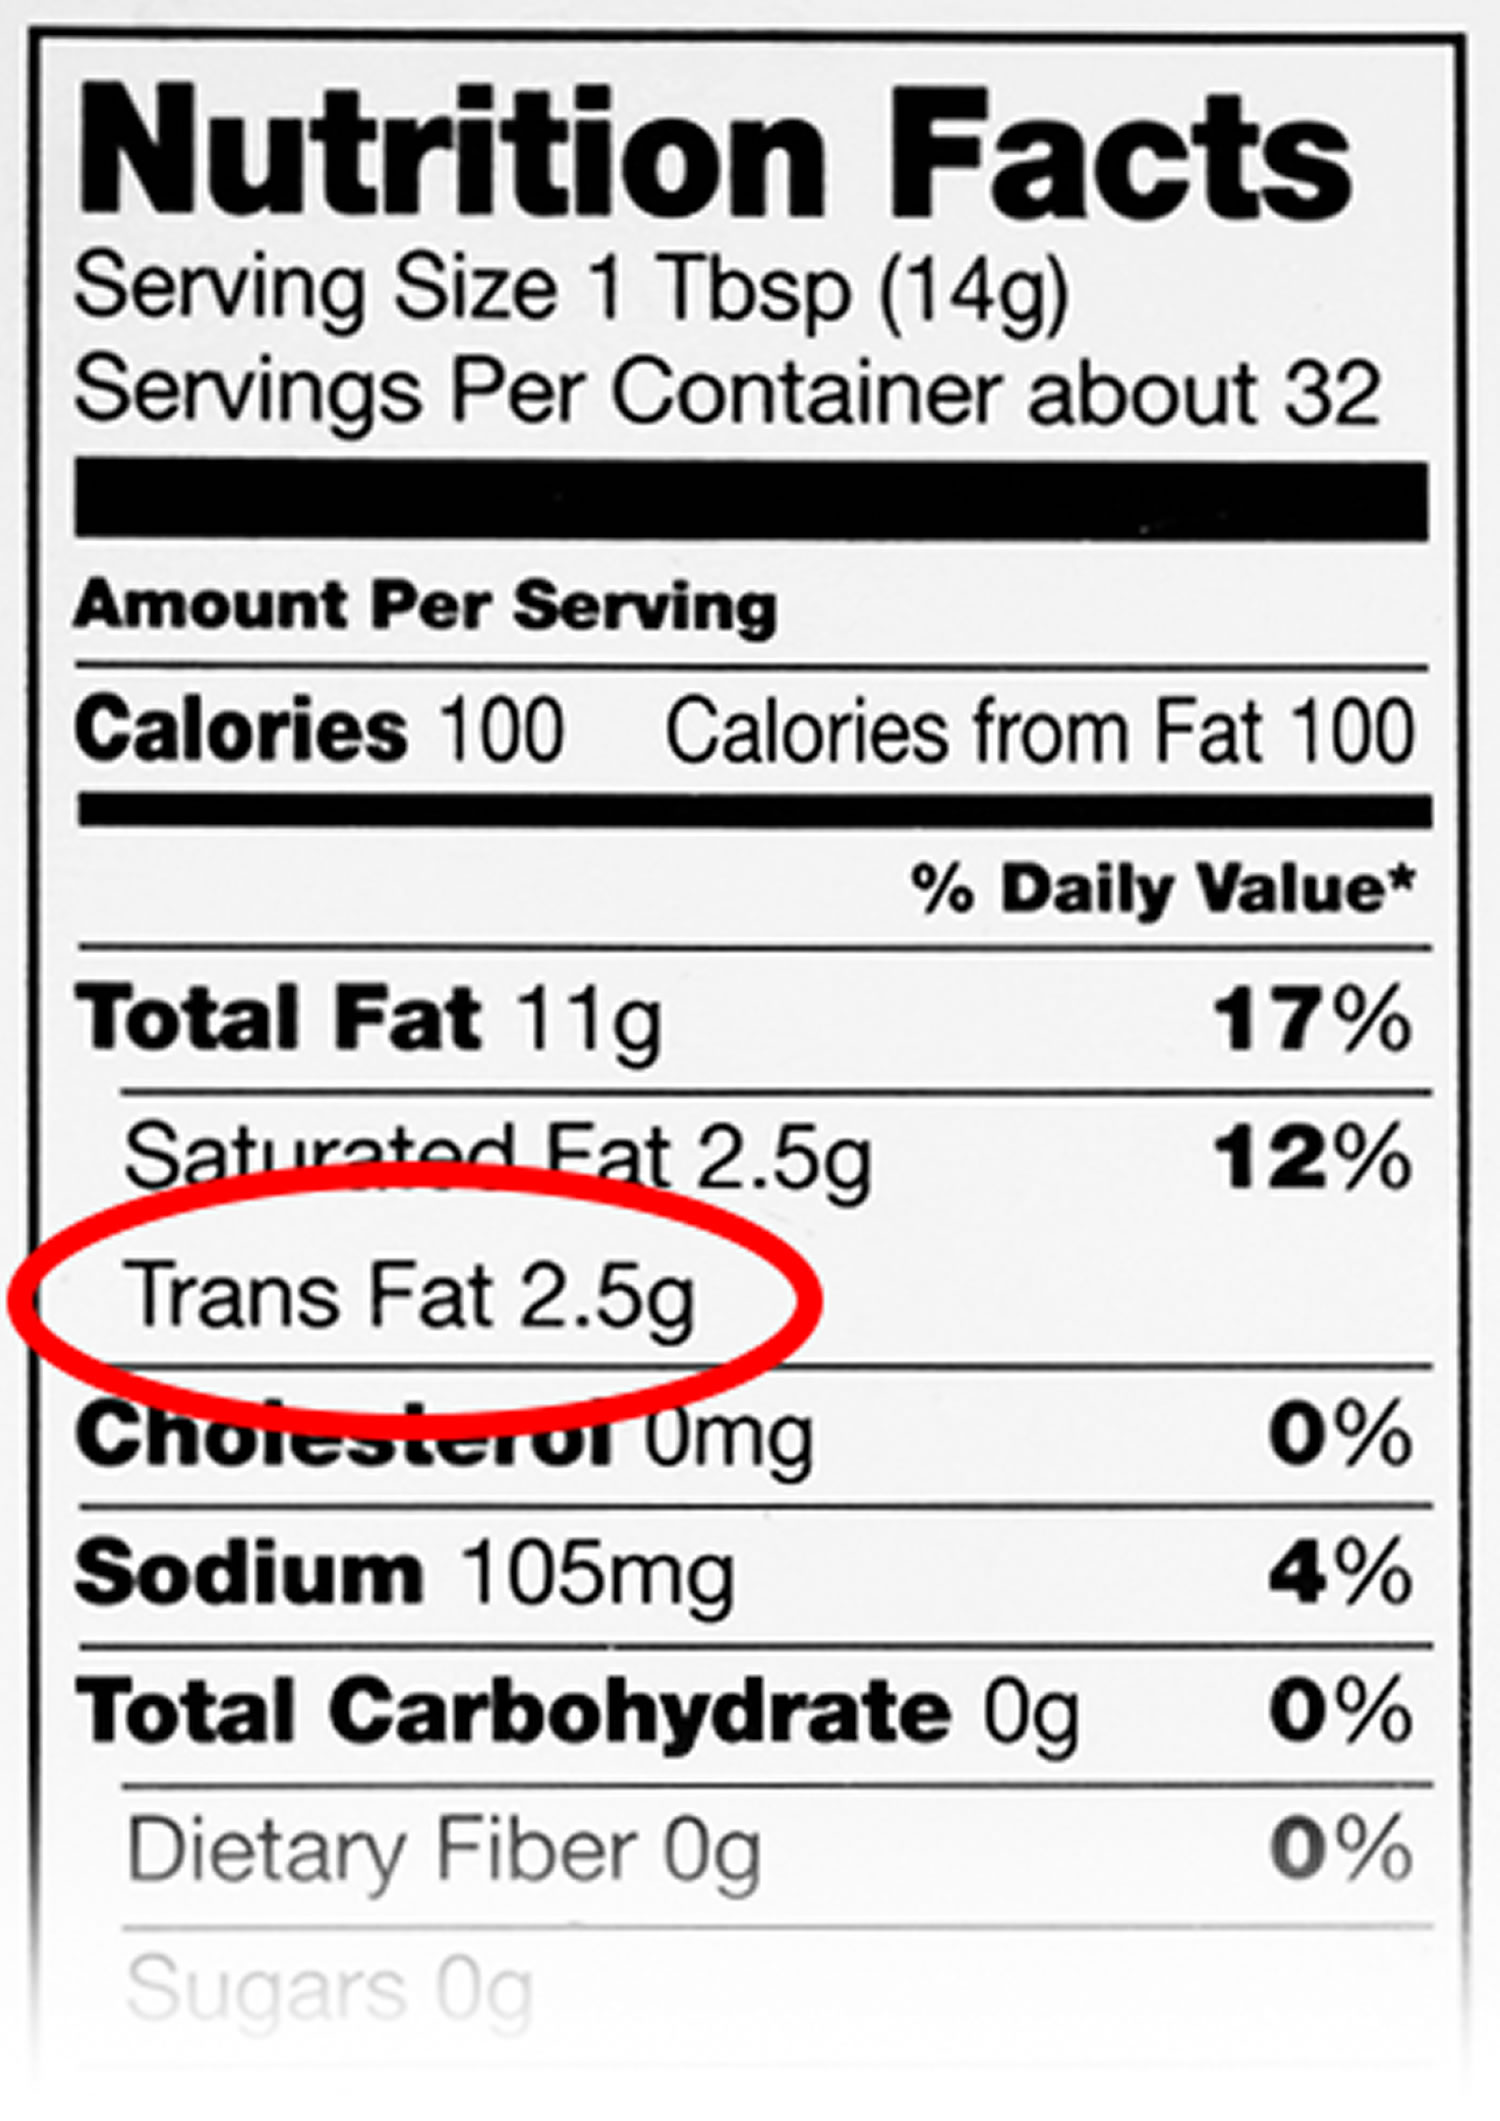 trans fat